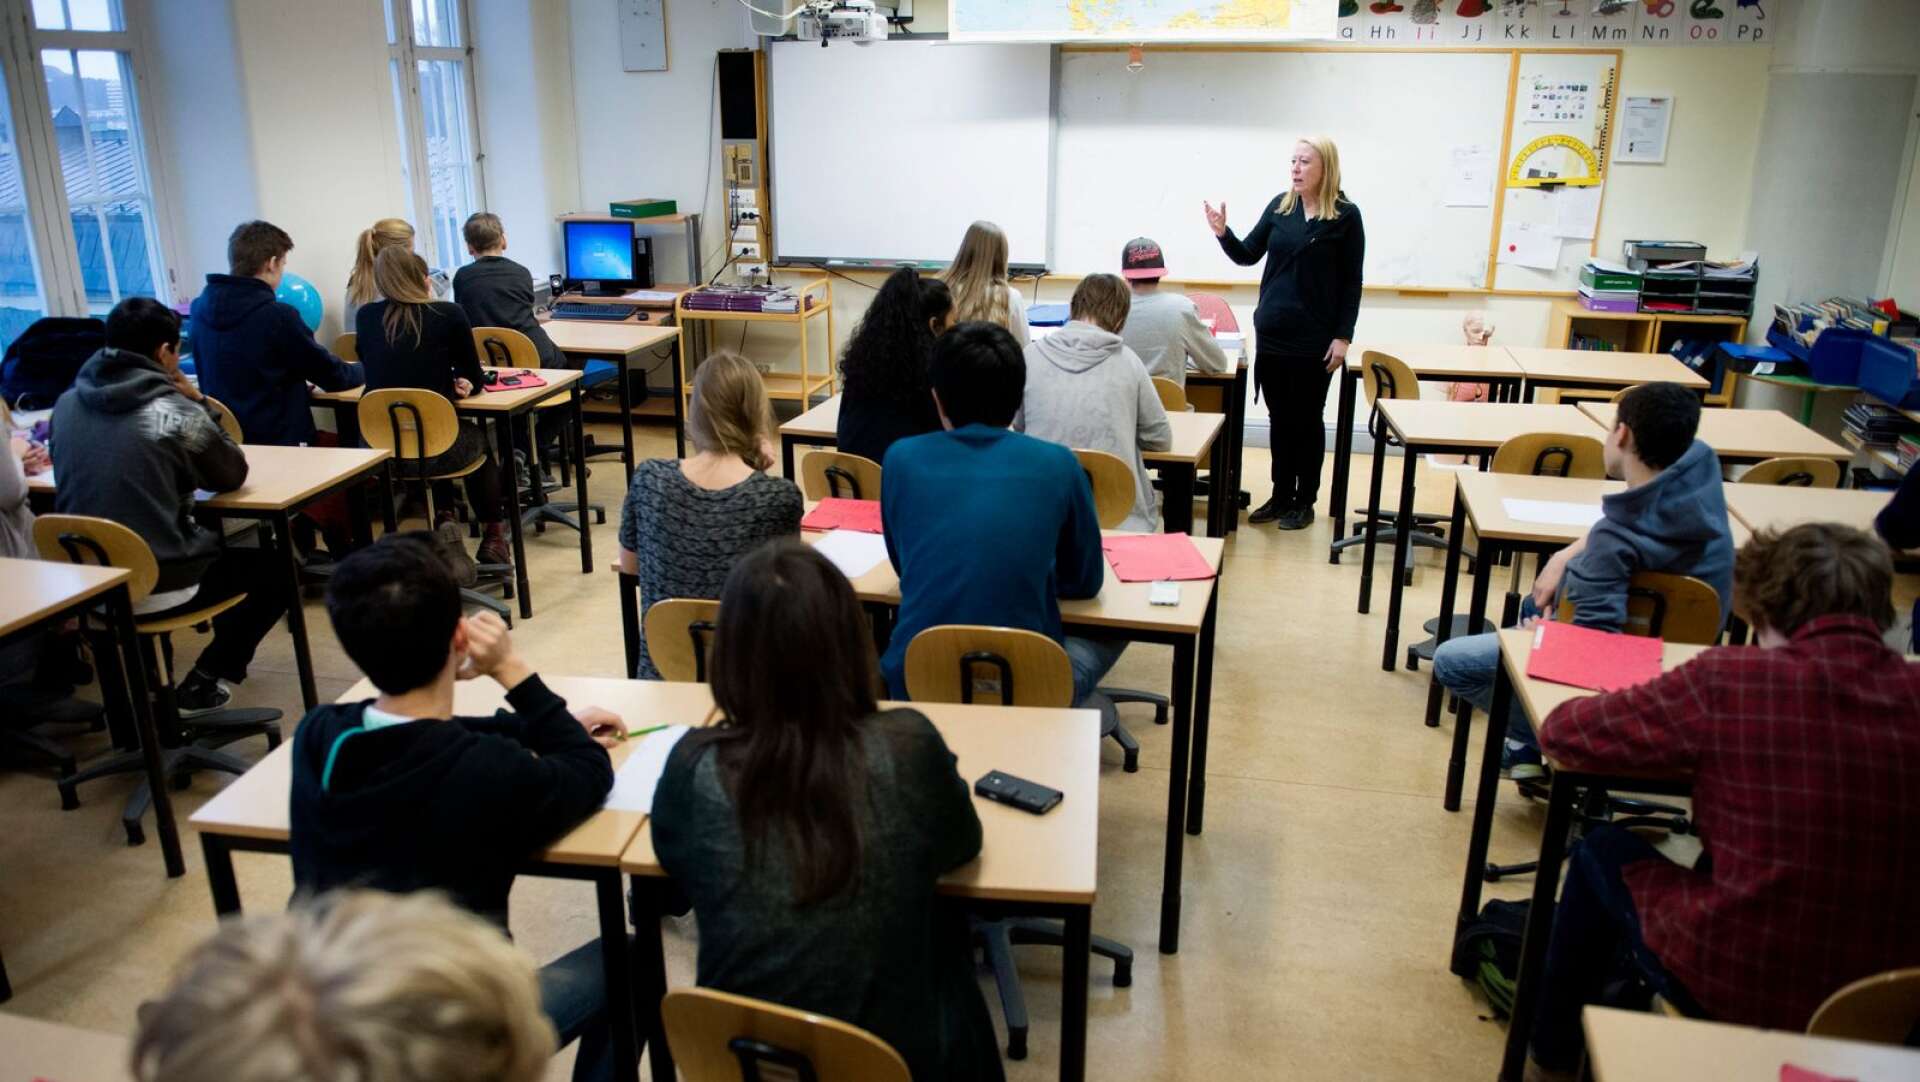 Att en ny rektor rekryterades internt kritiseras av invånare. Bilden är inte tagen i Gullspång.